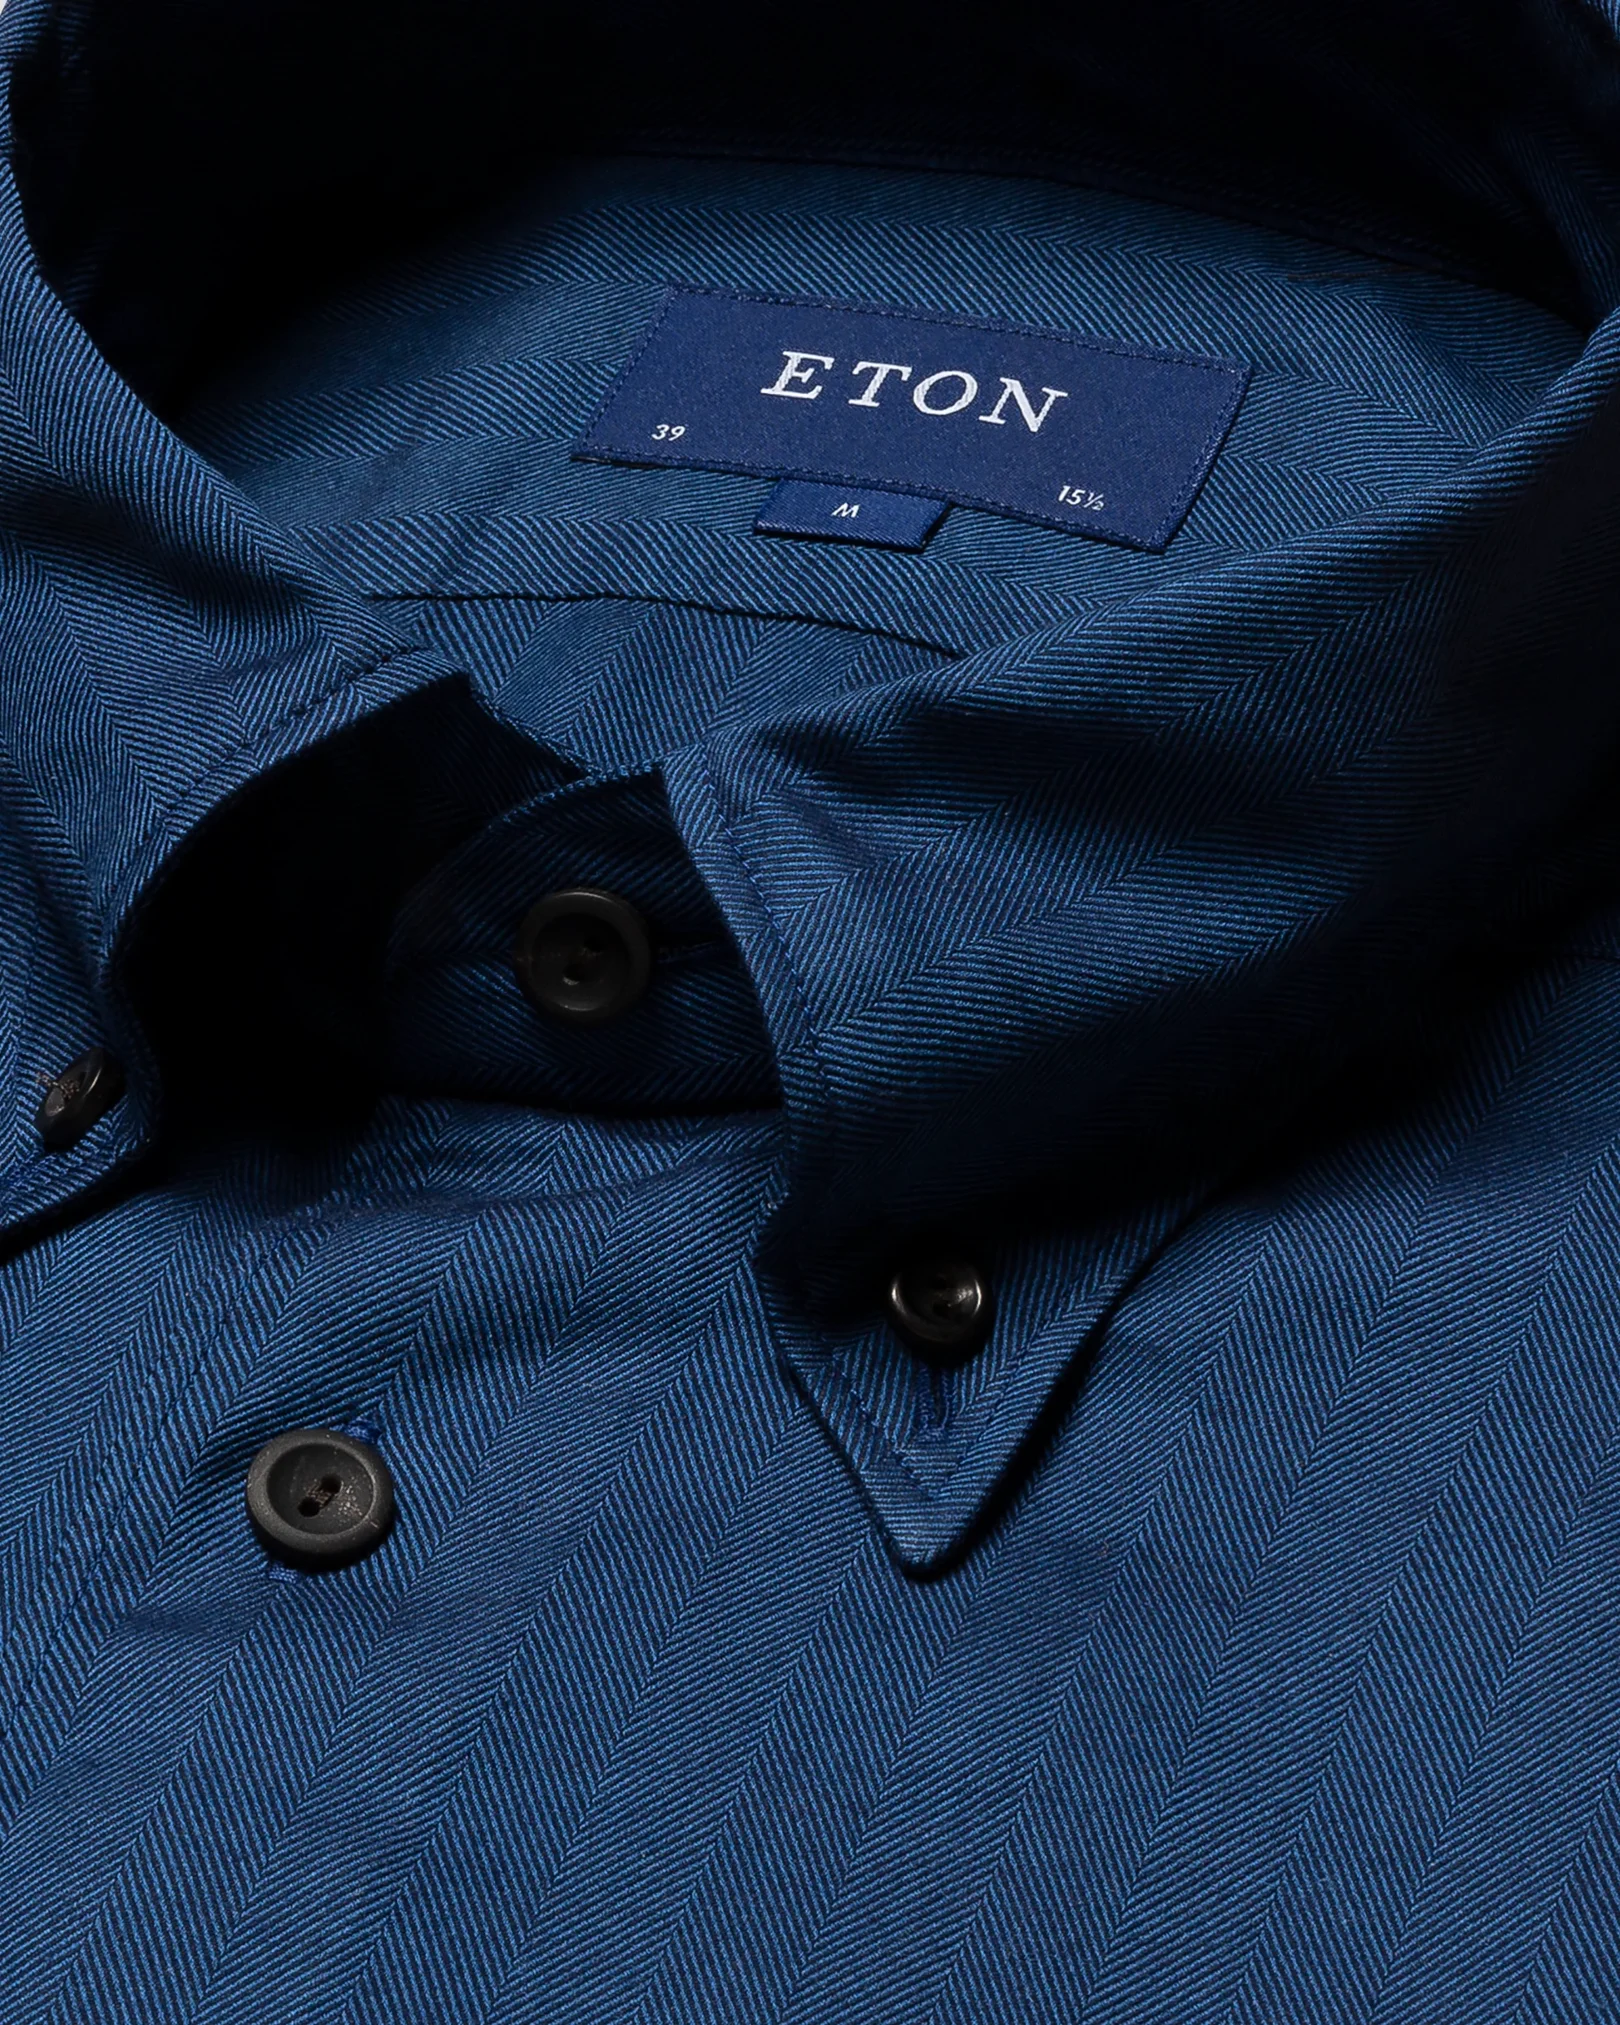 Eton - dark blue lightweight flannel